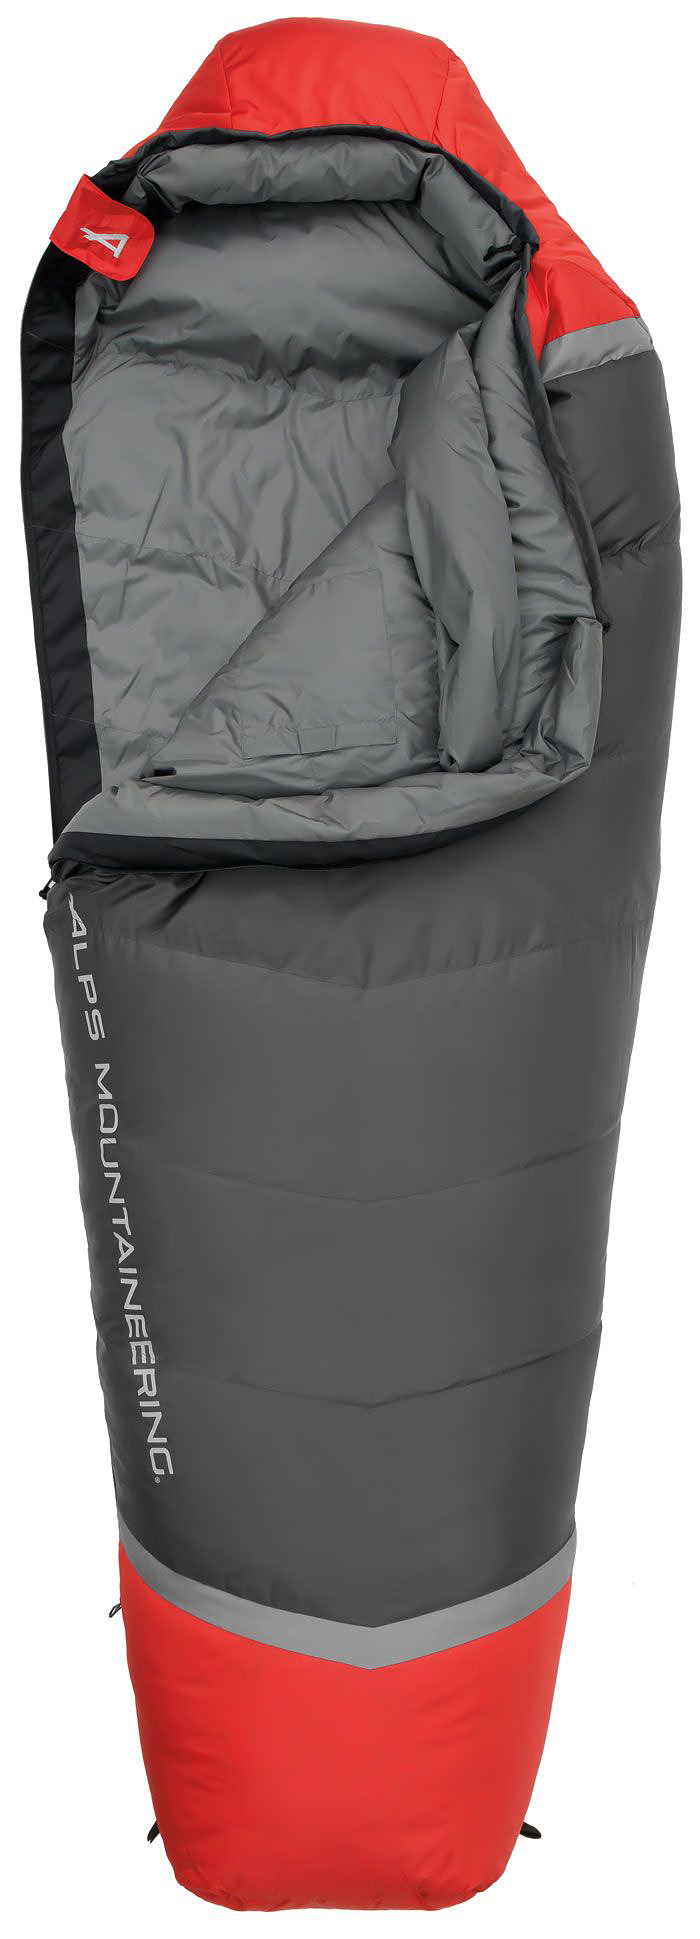 Alps Mountaineering Zenith 0 Mummy Sleeping Bag - Long